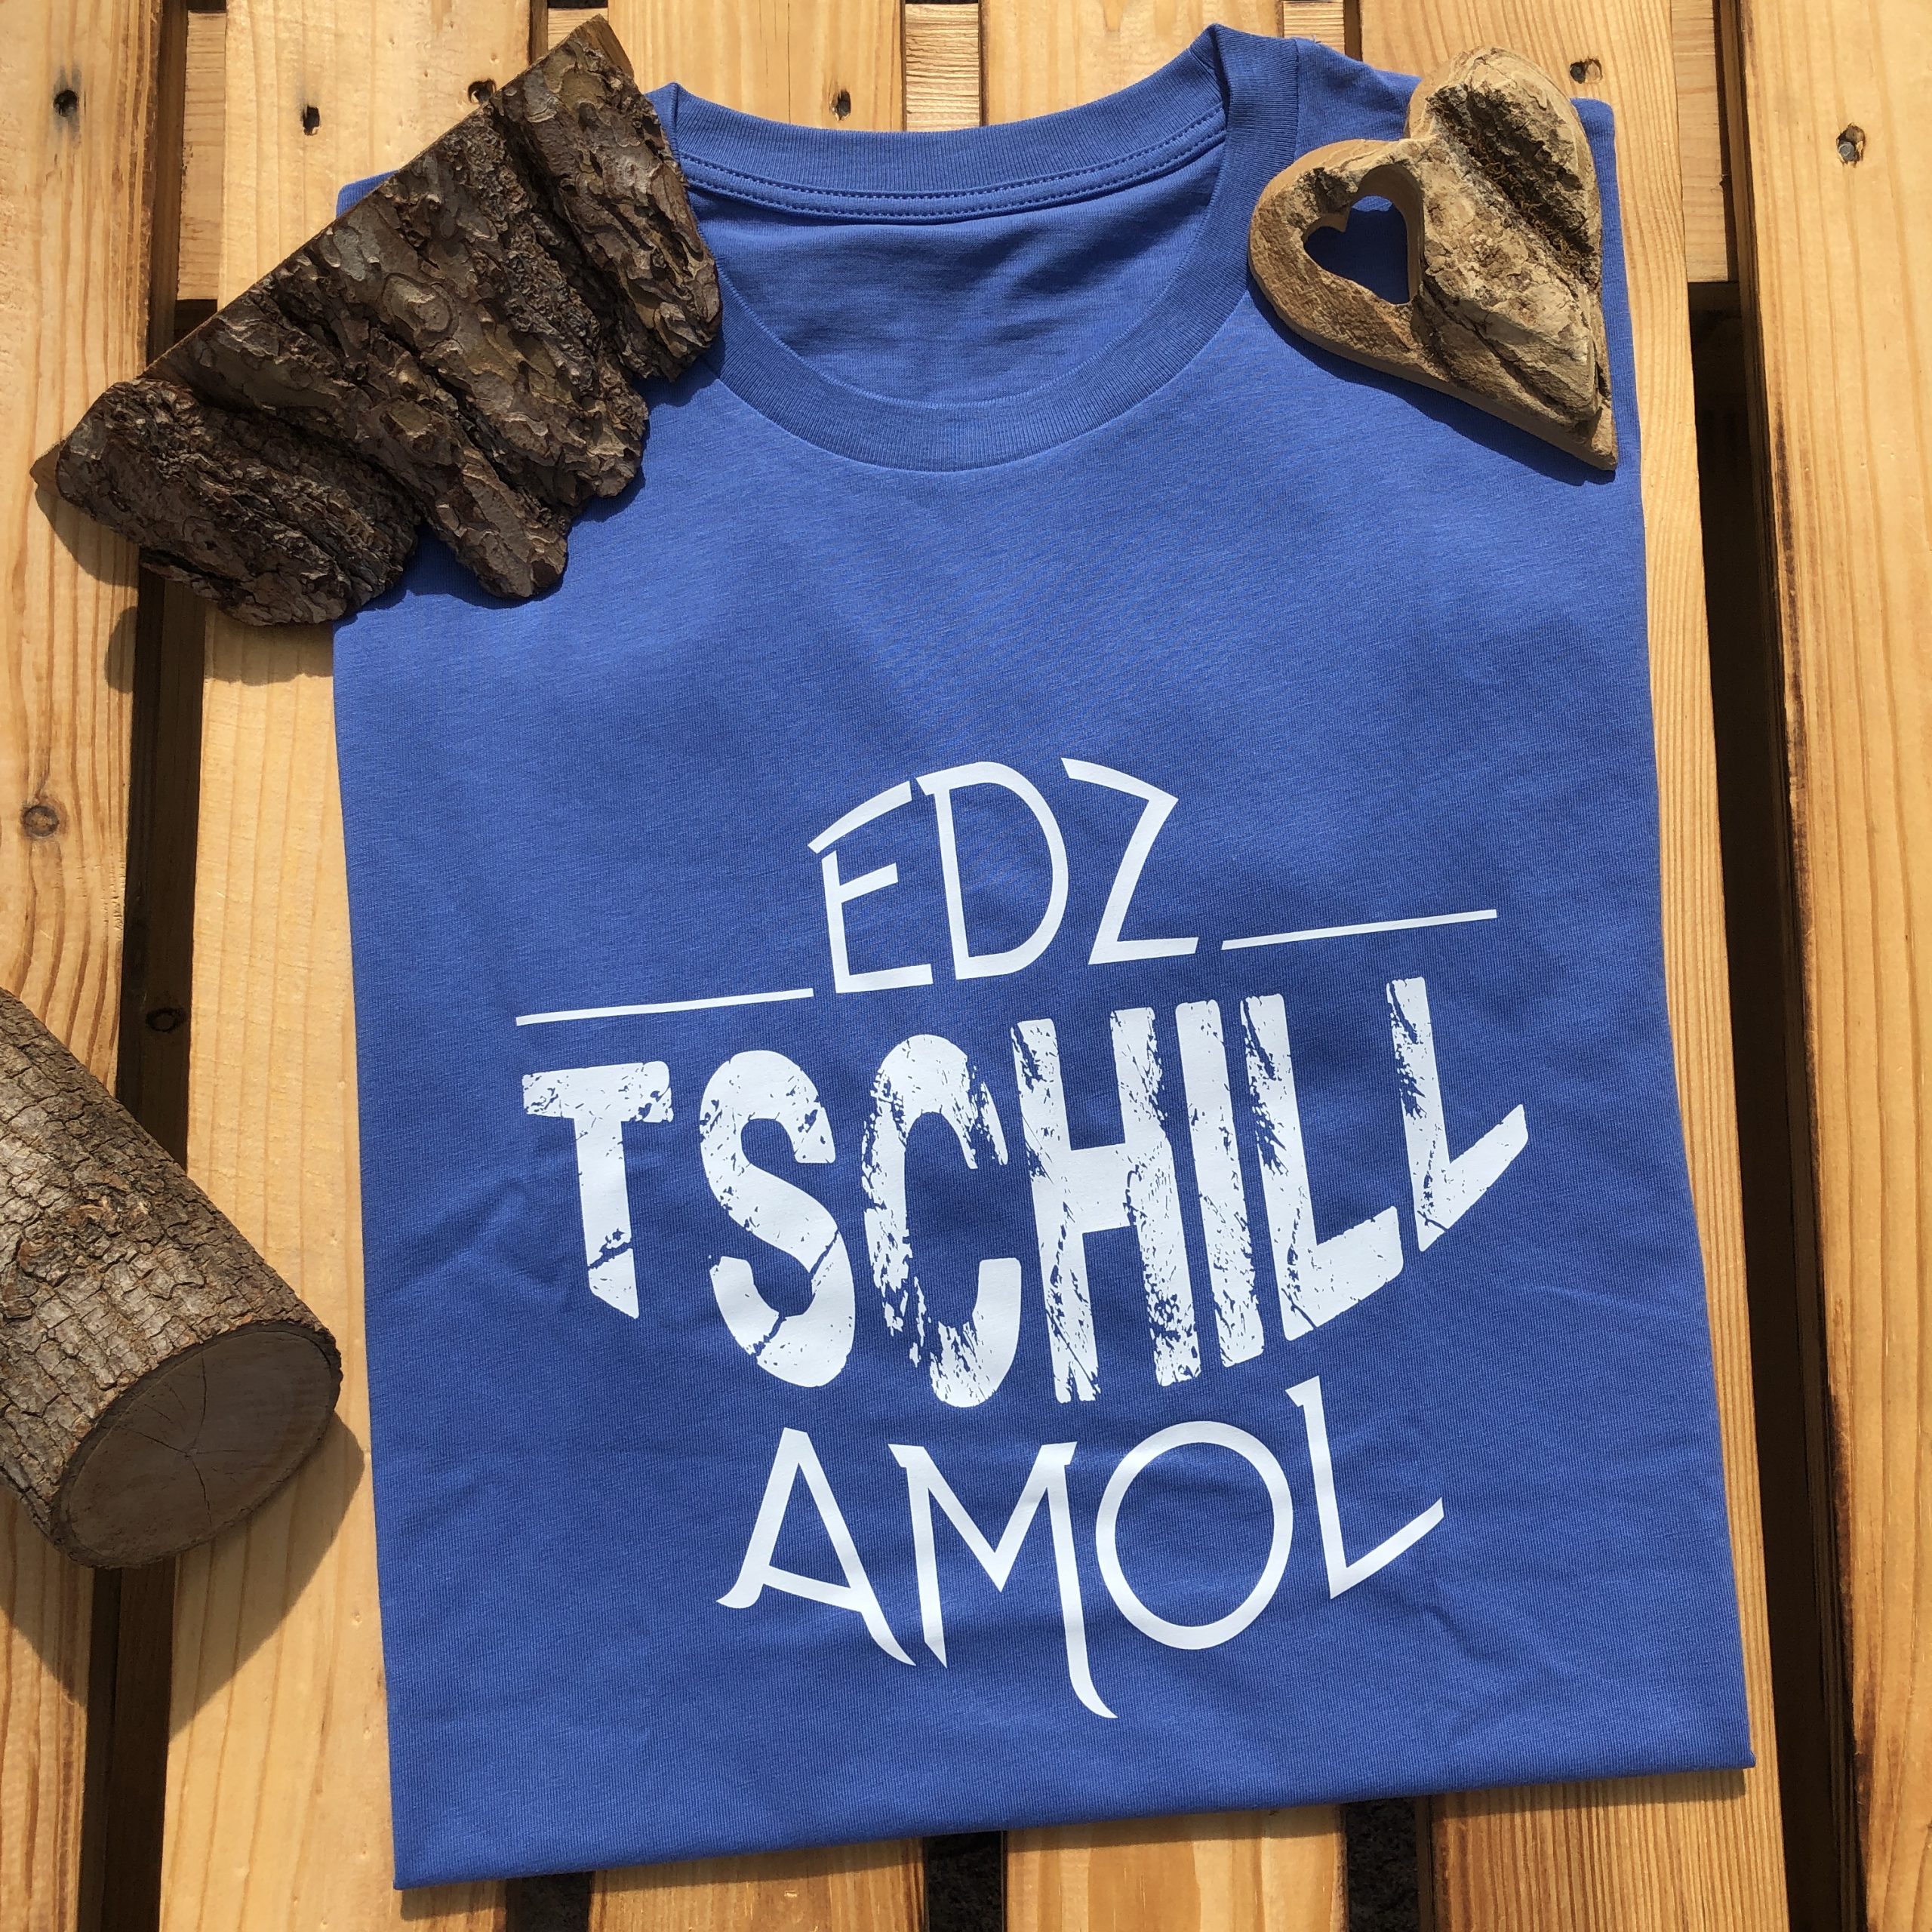 Edz Tschill Amol T-Shirt Frankenstyle Fränkische Shirts und Streewear Shop Würzburg Mode